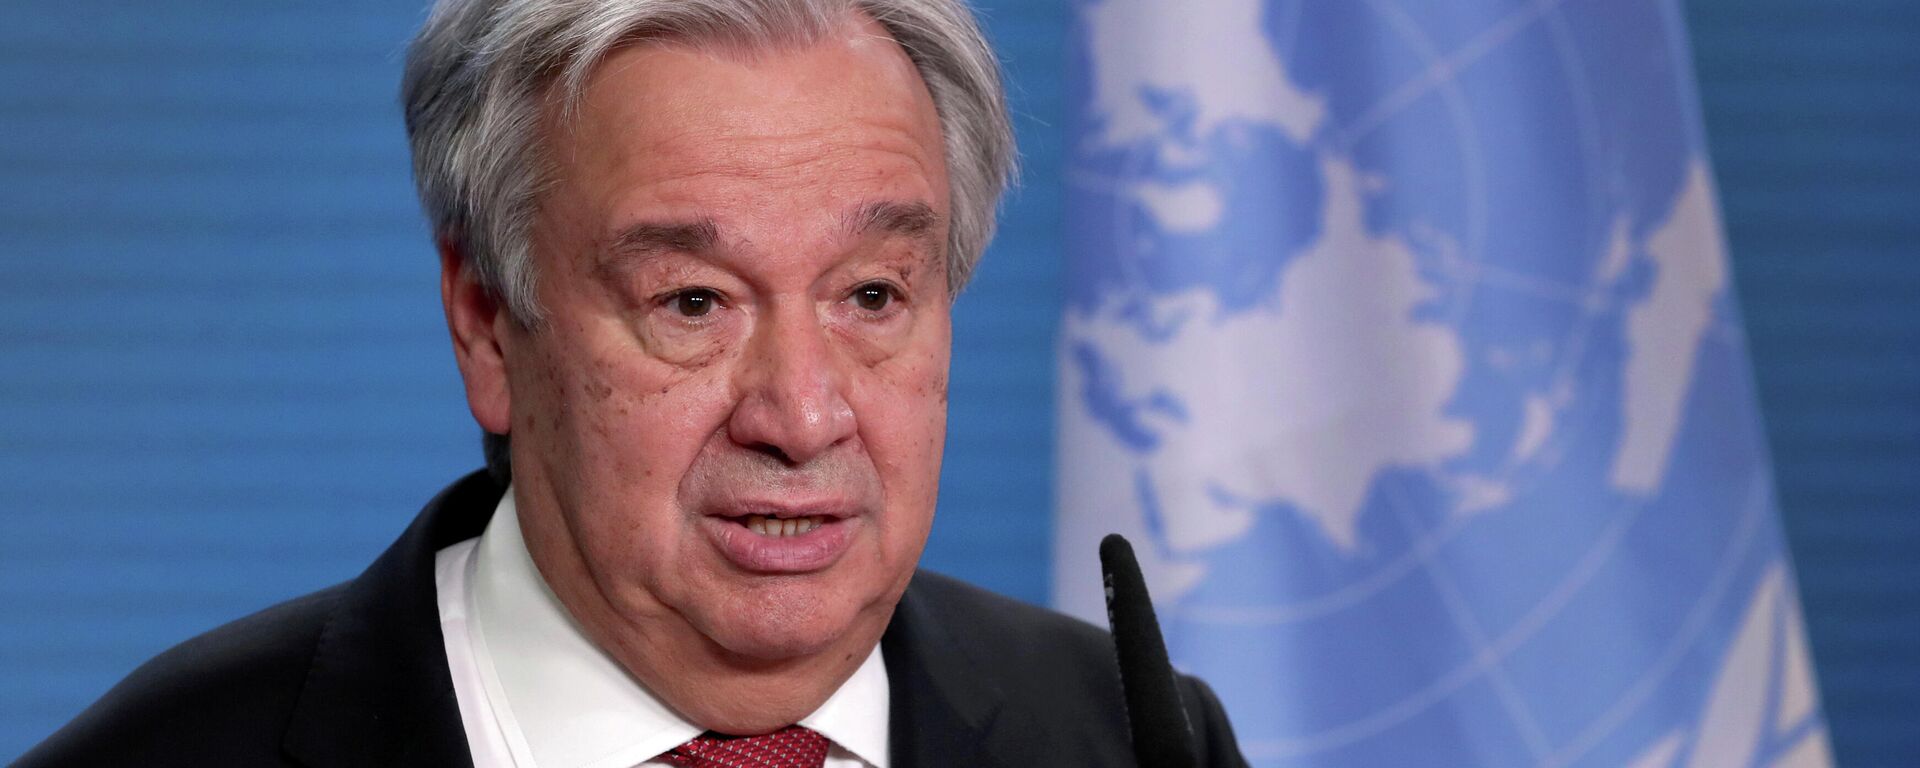 António Guterres, el secretario general de la Organización de Naciones Unidas (ONU) - Sputnik Mundo, 1920, 29.03.2021